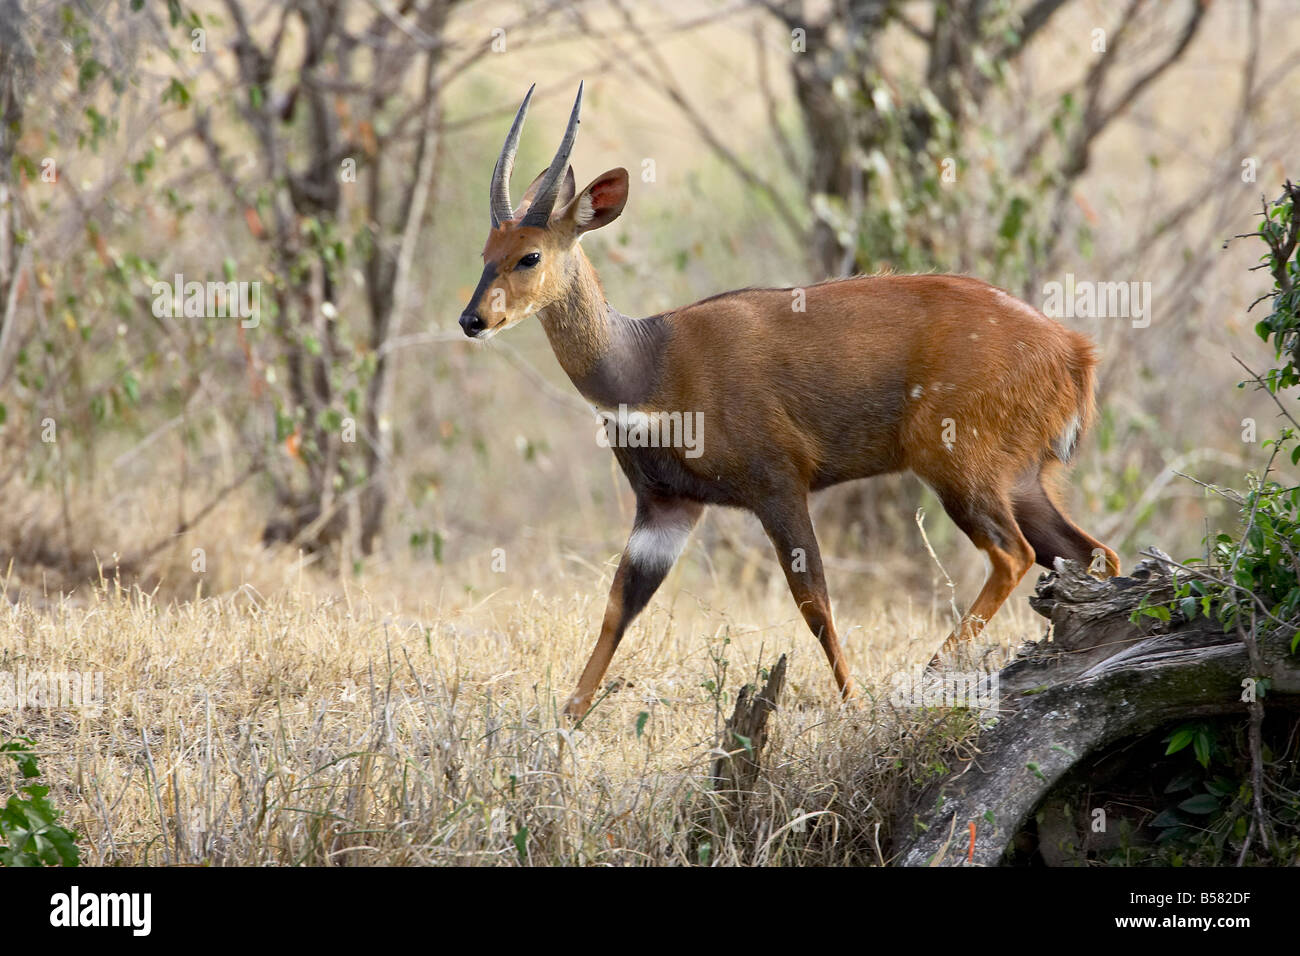 Bushbuck (Tragelaphus scriptus mâle), Masai Mara National Reserve, Kenya, Afrique de l'Est, l'Afrique Banque D'Images